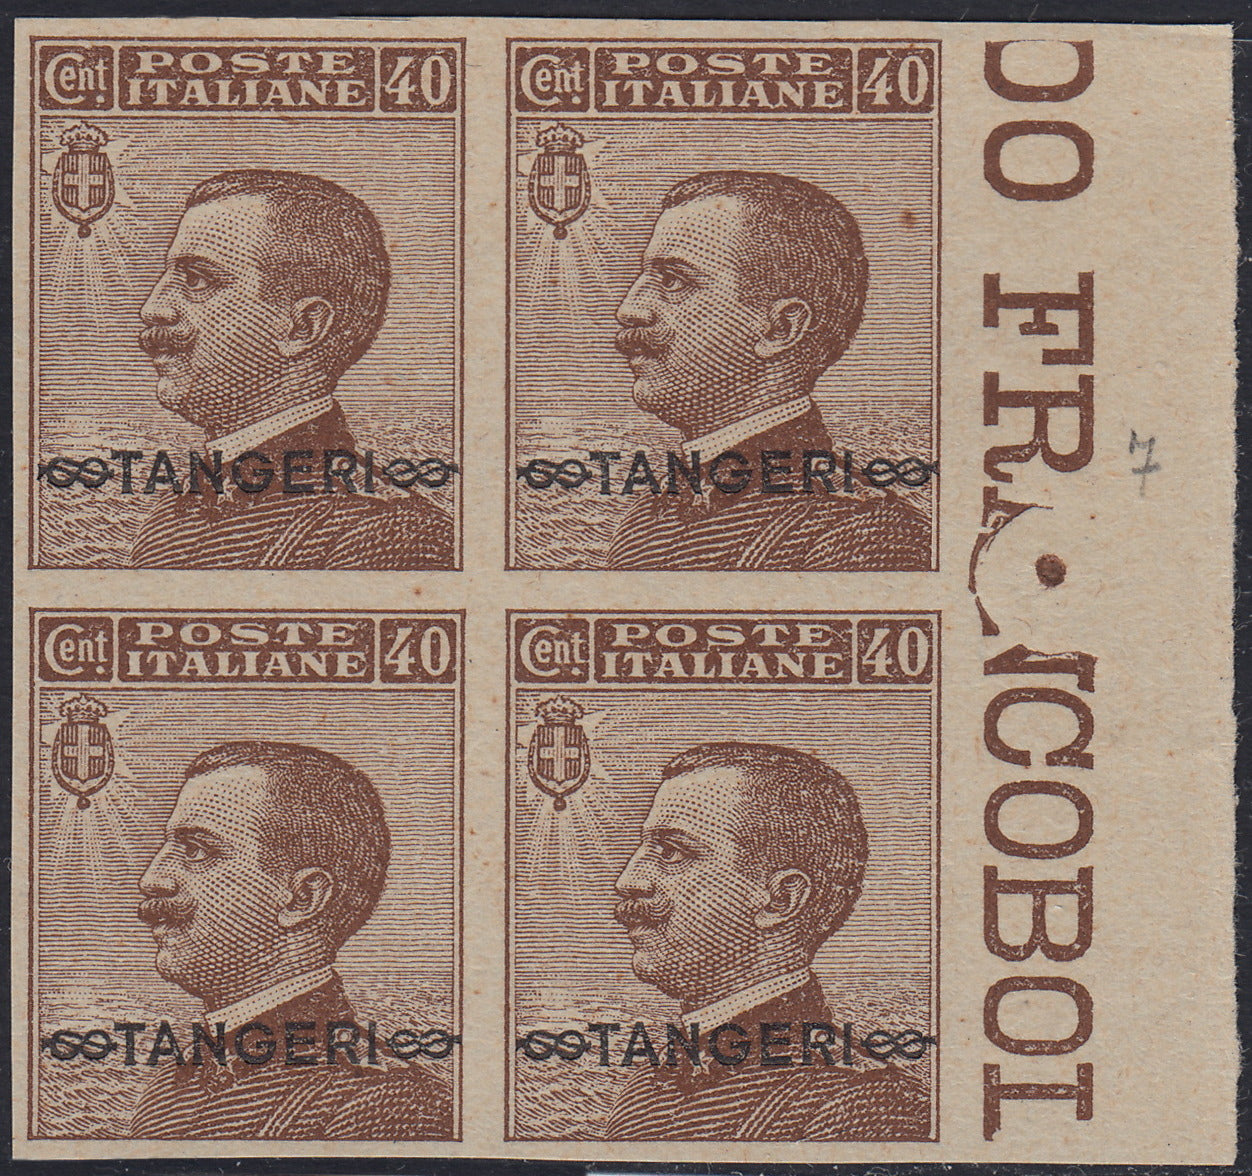 LevMar1 - 1926 - Marruecos, sello italiano núm. 84 "TANGERI" sobreimpreso entre dos nudos Saboya, bloque de cuatro ejemplares nuevos sin engomar (S1) 